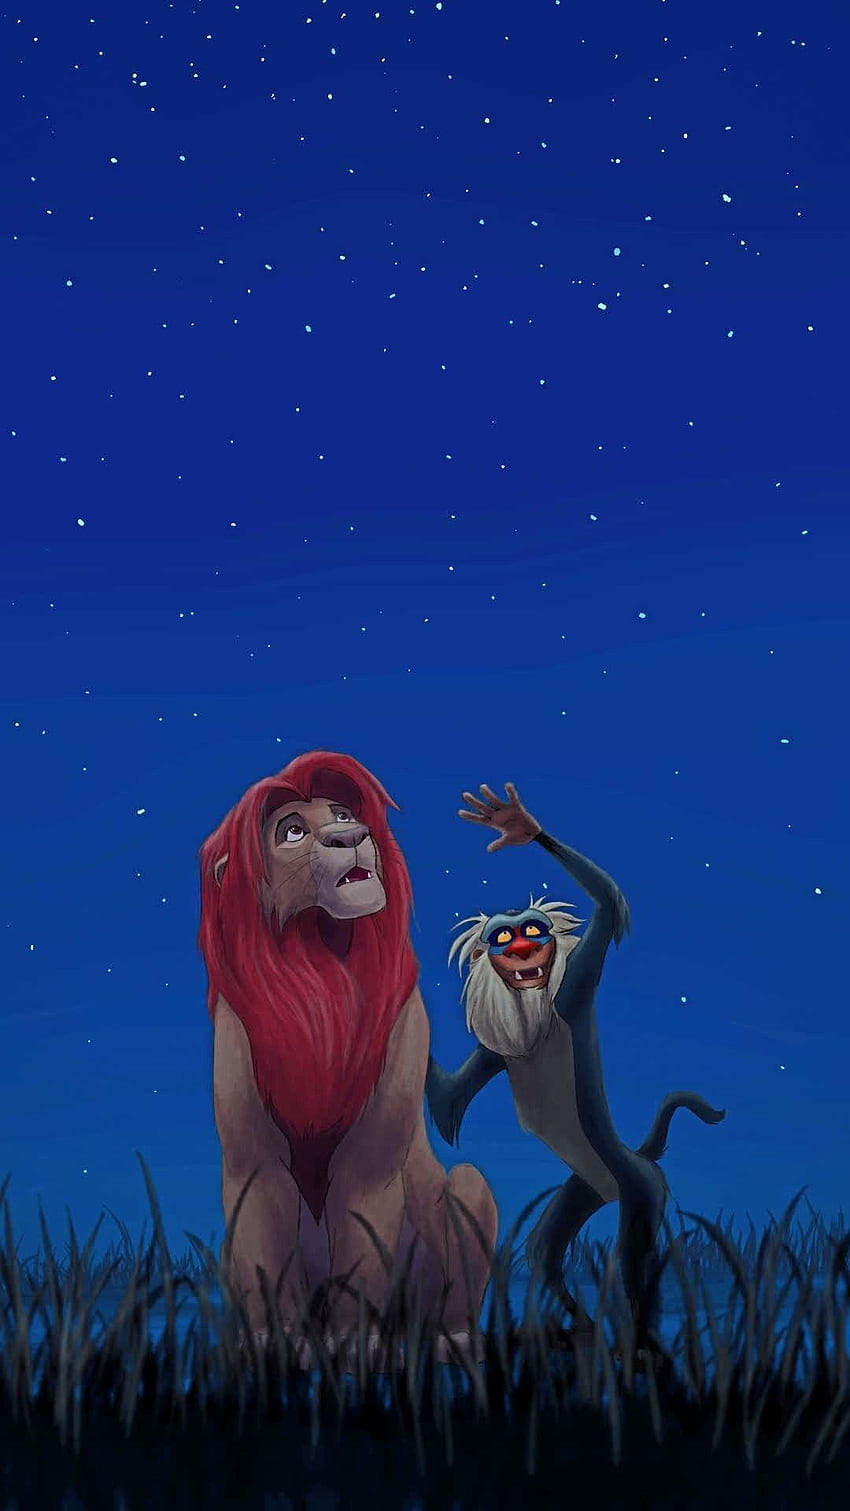 Cảnh tượng hoàng gia từ bộ phim huyền thoại về nhà vua sư tử. Hãy tải nền tảng điện thoại của bạn với hình nền hoàng gia Lion King iPhone wallpaper này và cùng thưởng thức dòng phim ưu tú này mỗi khi mở điện thoại. 